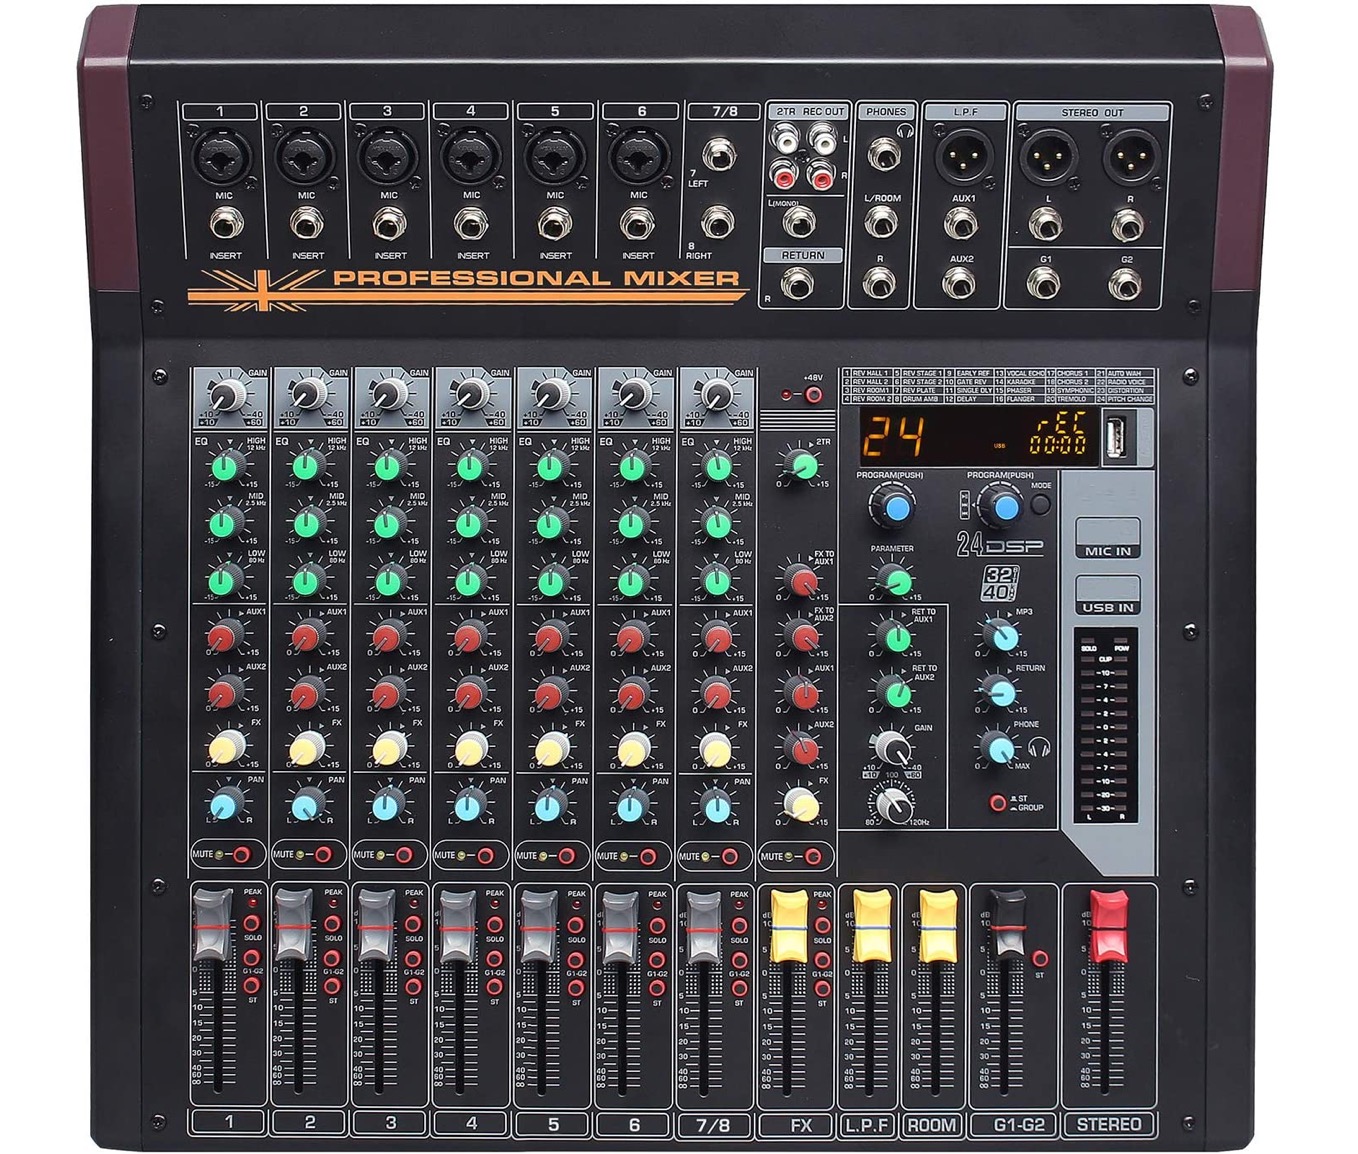 スタイリッシュシンプル Boytone BT-80MX 8-Channel Bluetooth Audio Mixer DJ Sound  Controller, Band EQ, 16 DSP Effects, USB